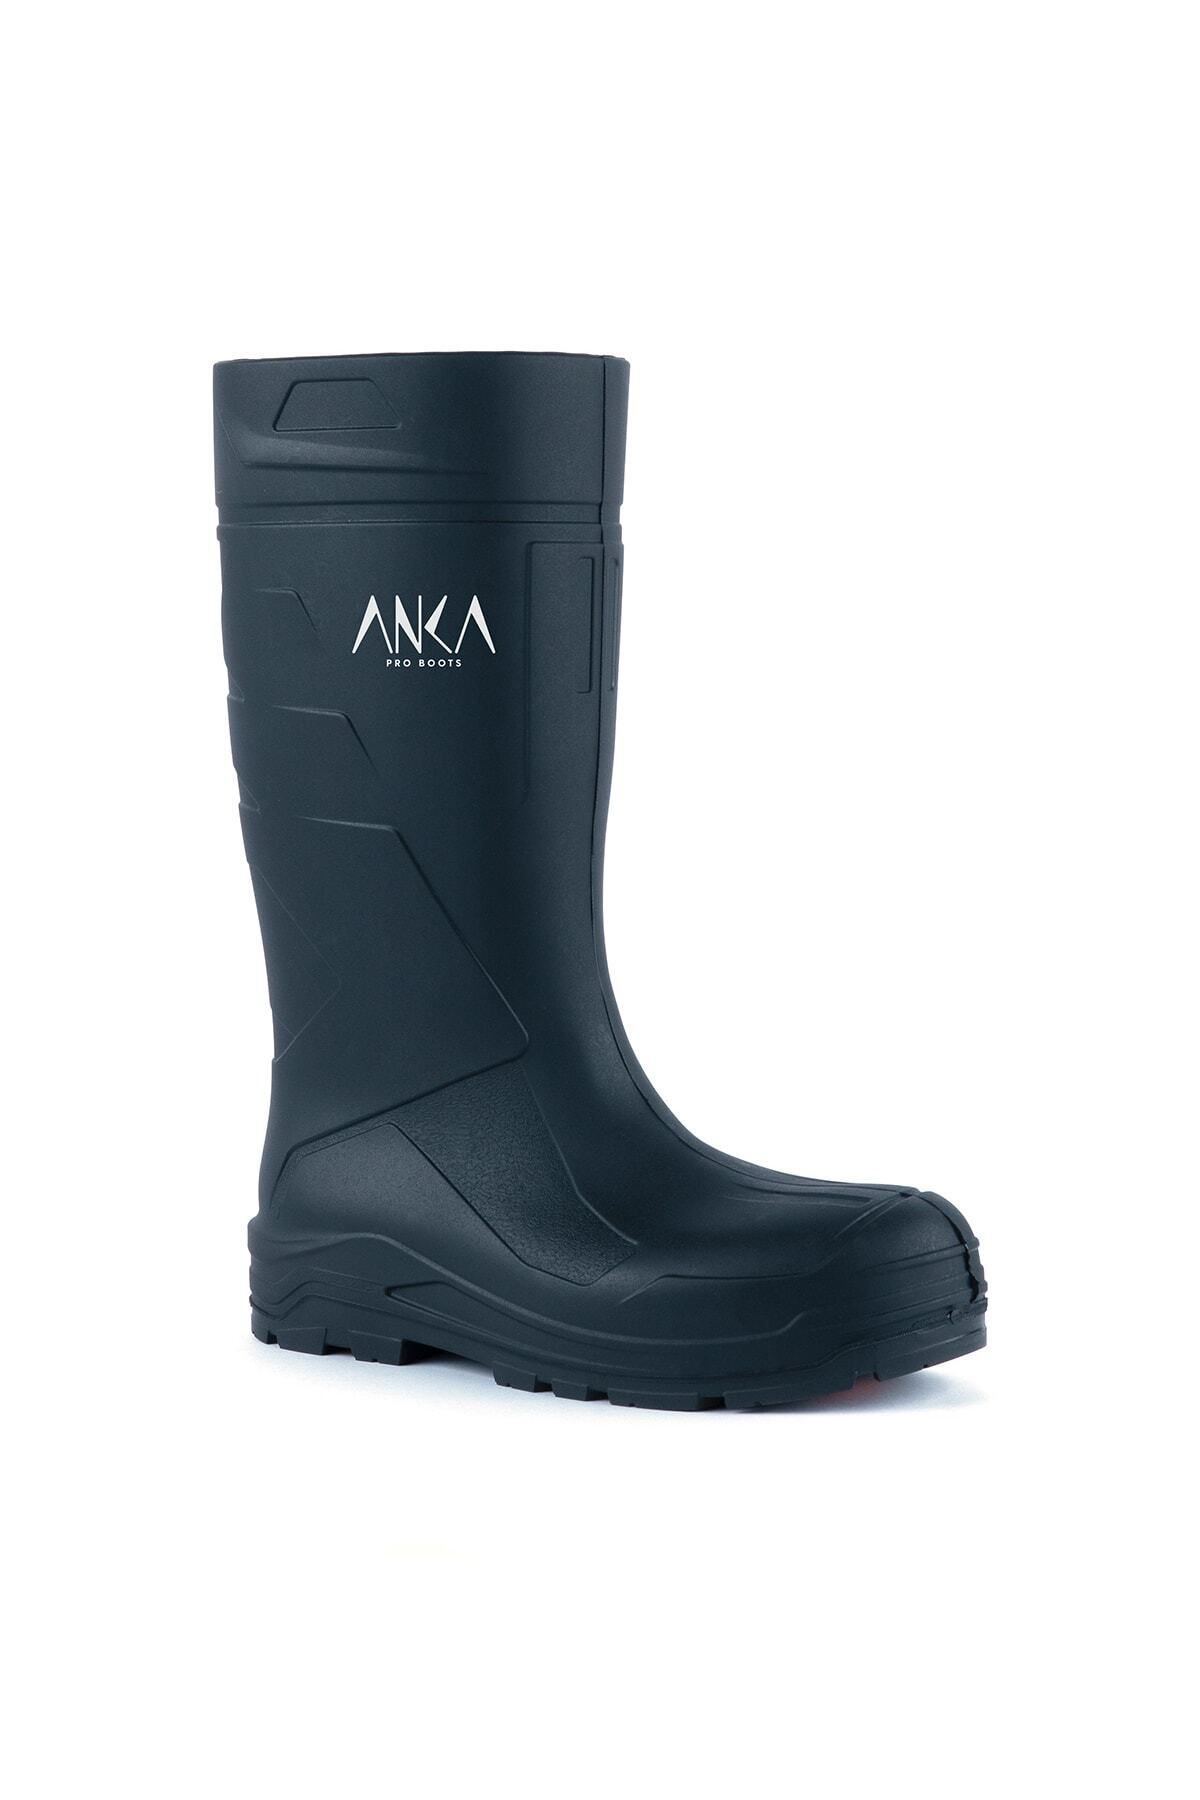 Anka Pro Boots 904 S4